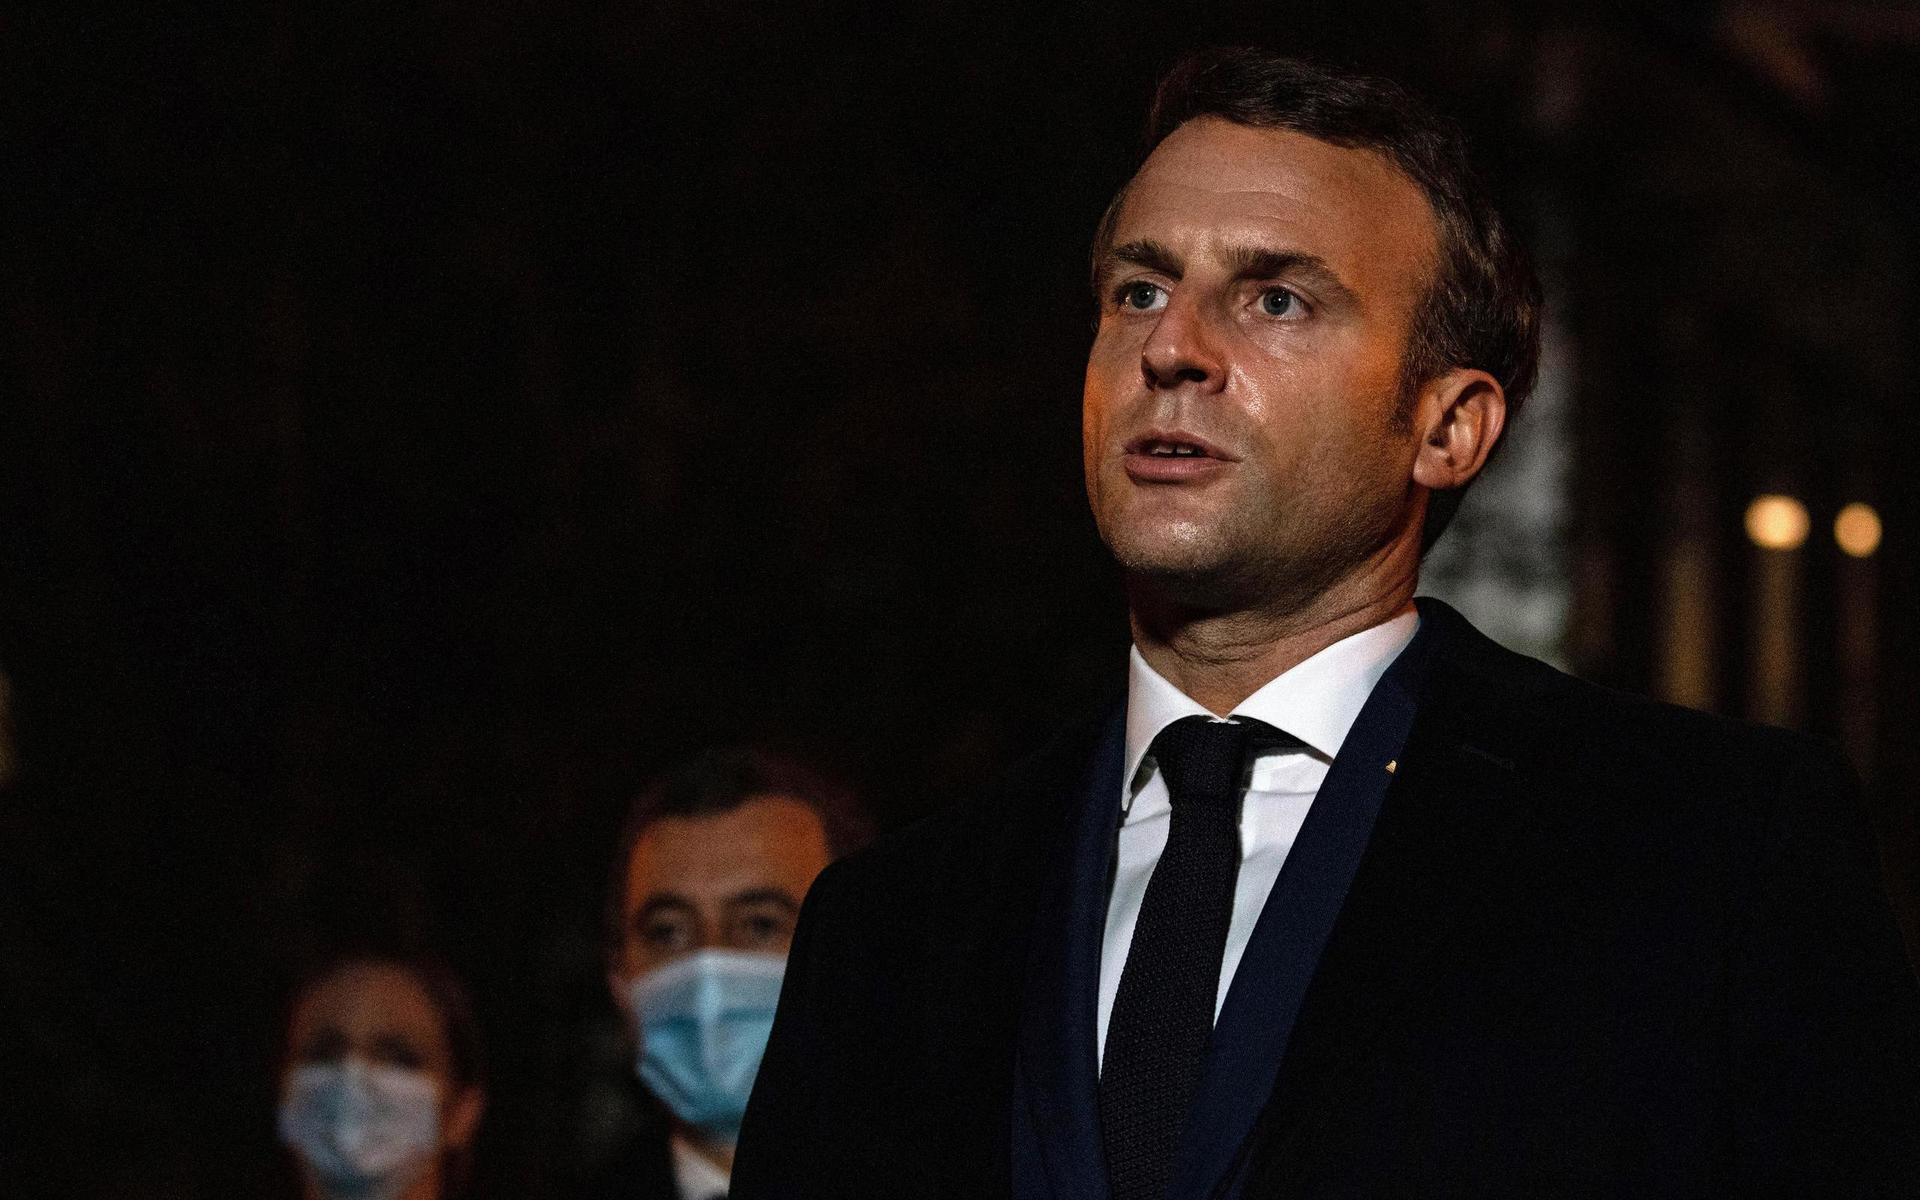 ”En medborgare har mördats i dag för att han var lärare, och för att han lärde ut yttrandefrihet”, sade president Emmanuel Macron vid ett besök på brottsplatsen efter dådet.